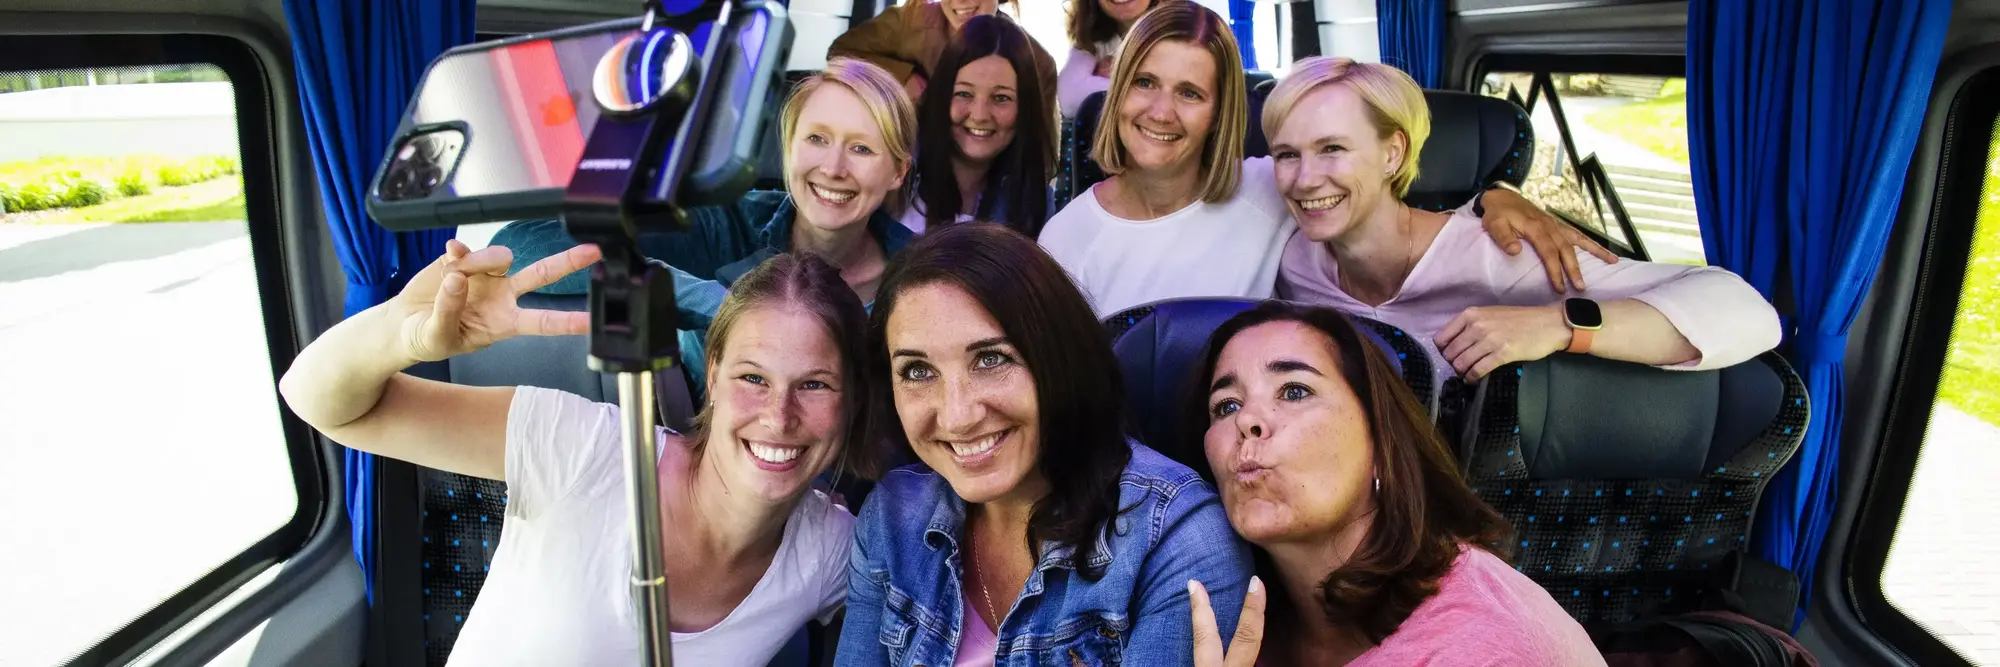 Mehrere Frauen, die in einem kleinen Bus sitzen und ein gemeinsames Selfie mit einem Selfiestick machen.